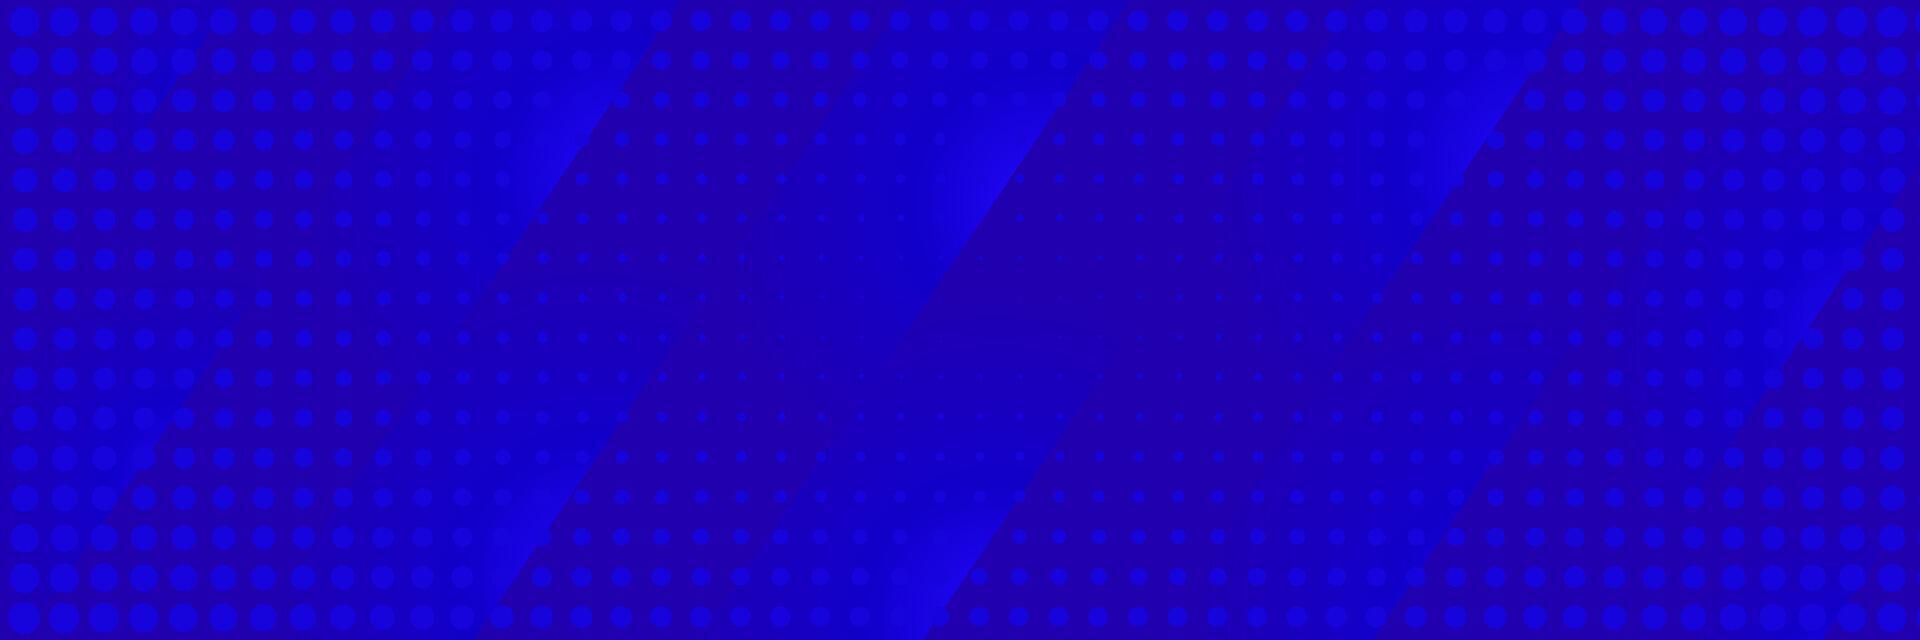 abstrakt kreativ elegant blå bakgrund med halvton vektor